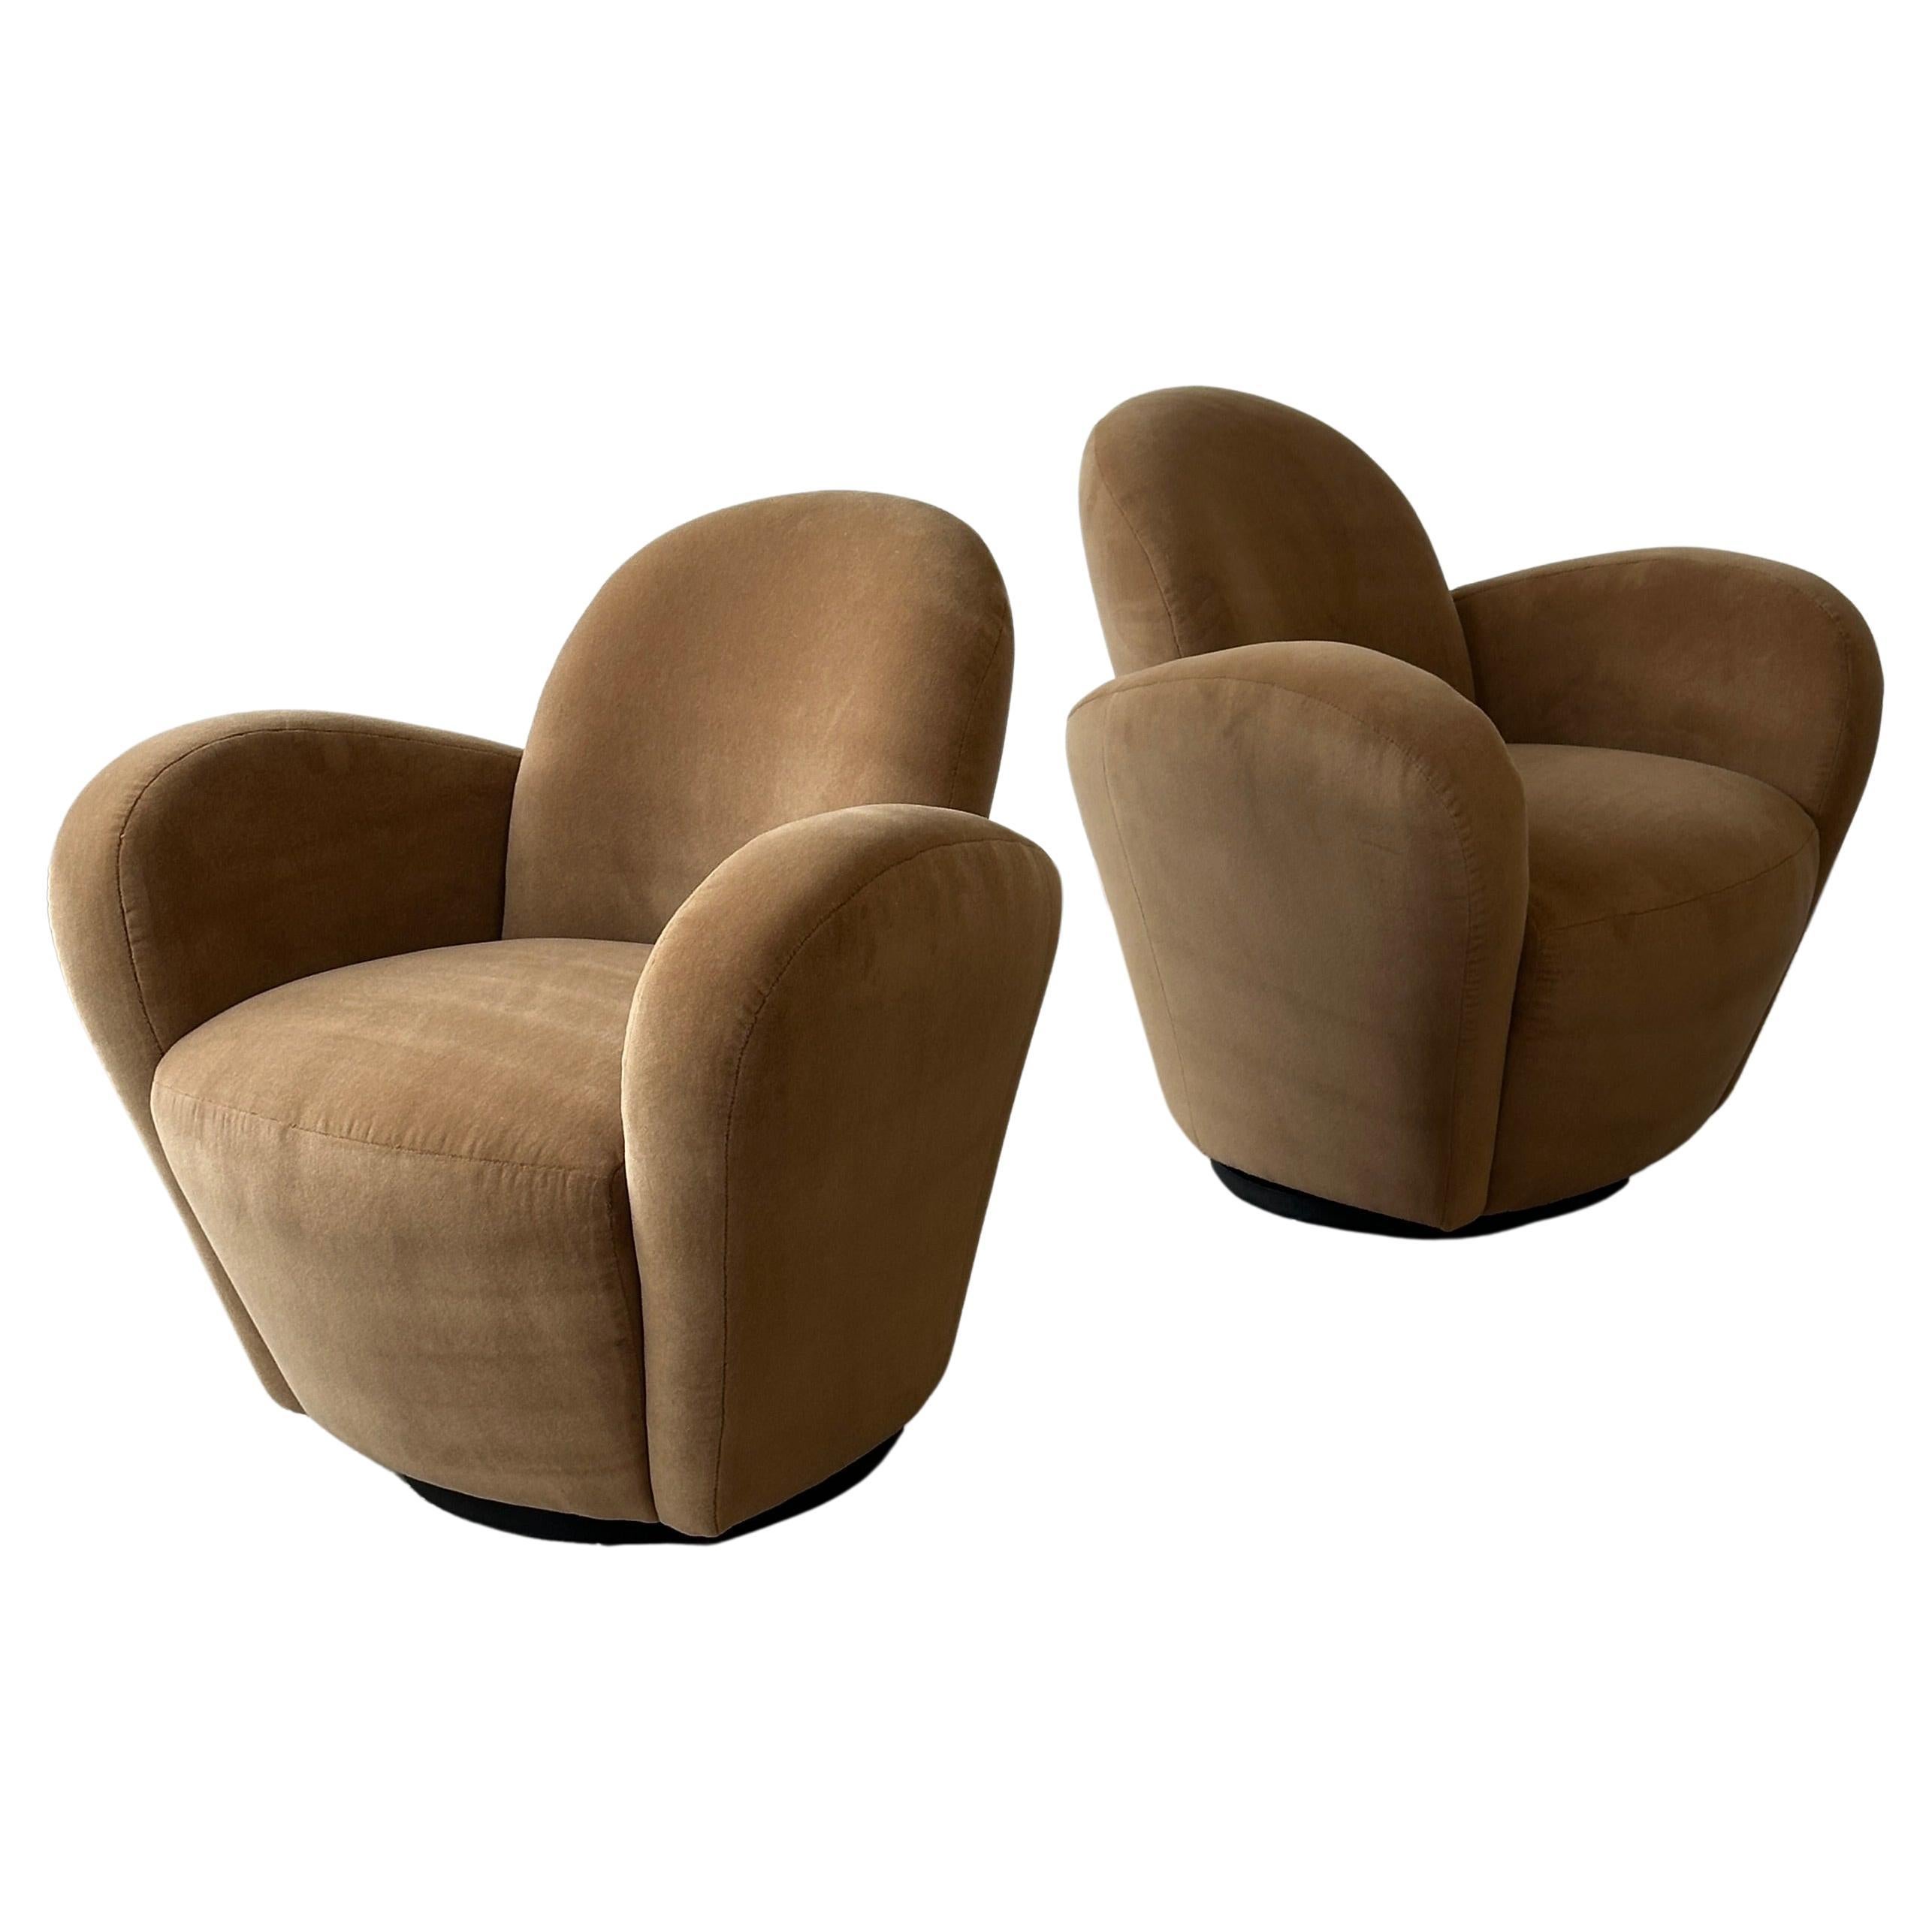 Michael Wolk “Miami” Chairs, a pair